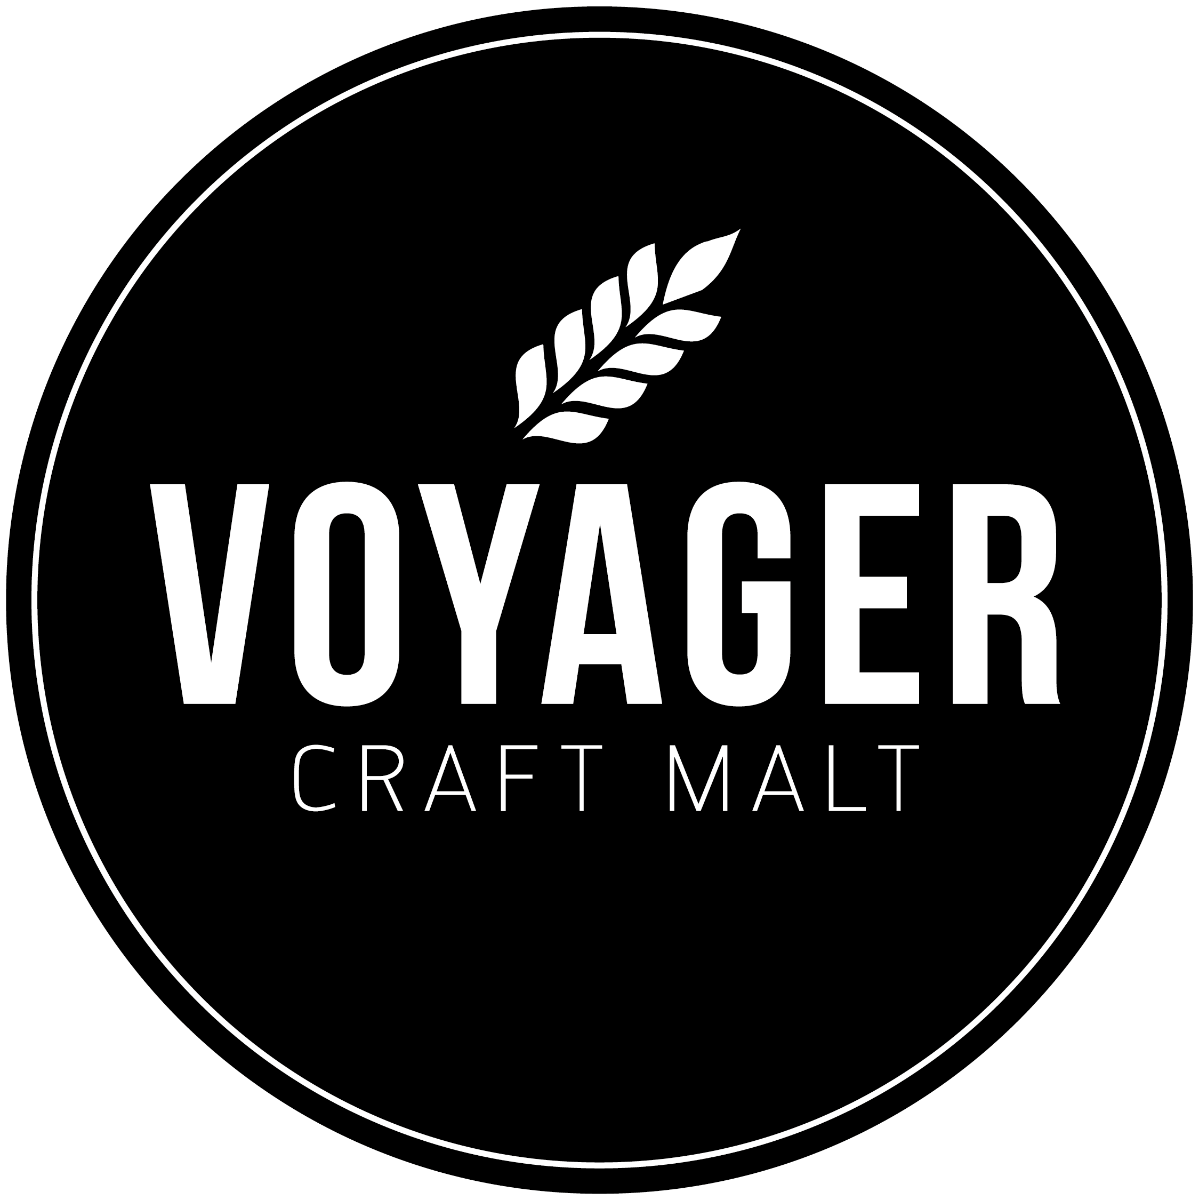 Voyager Schooner